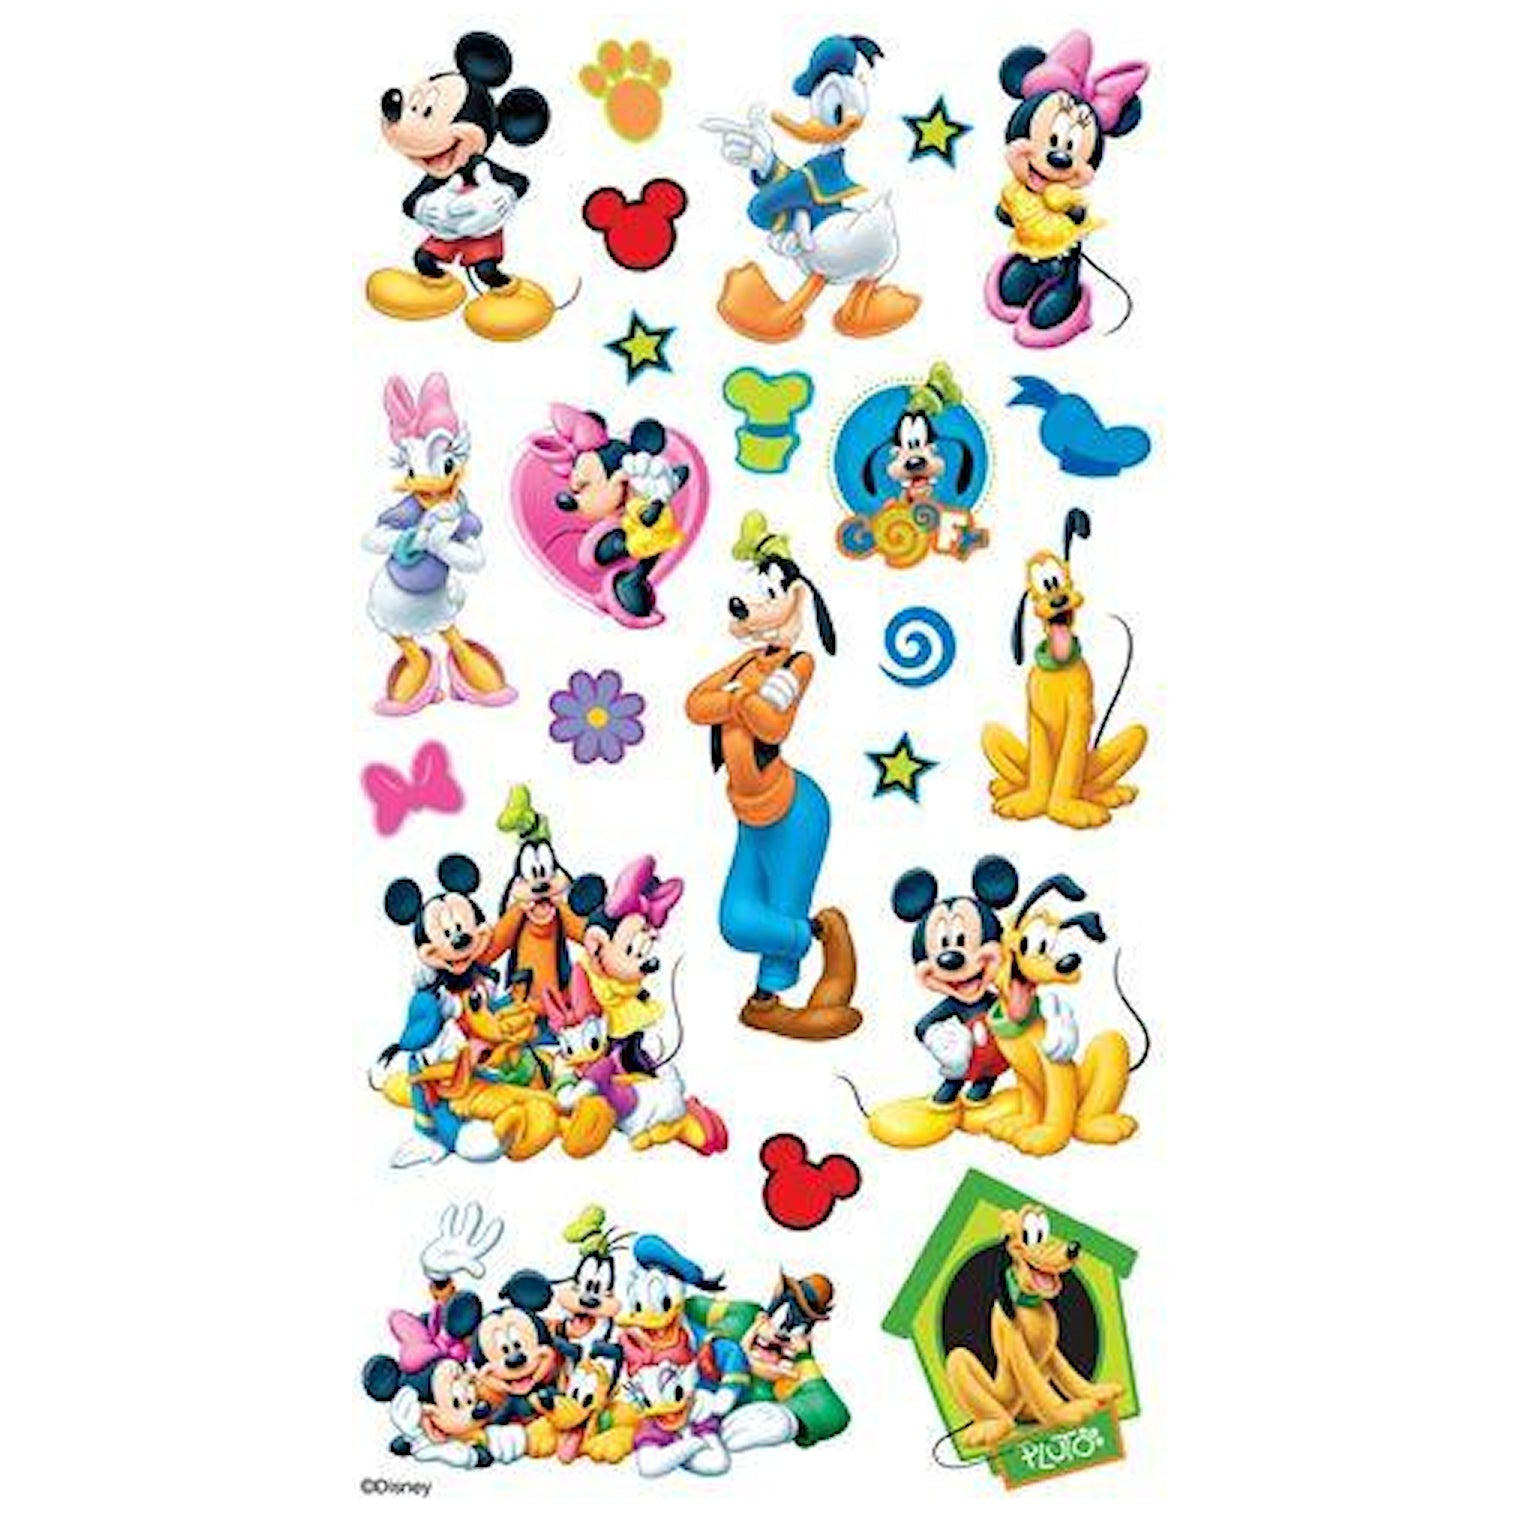 Mickey and Friends Stickers  / Estampas de Mickey Mouse y sus Amigos.